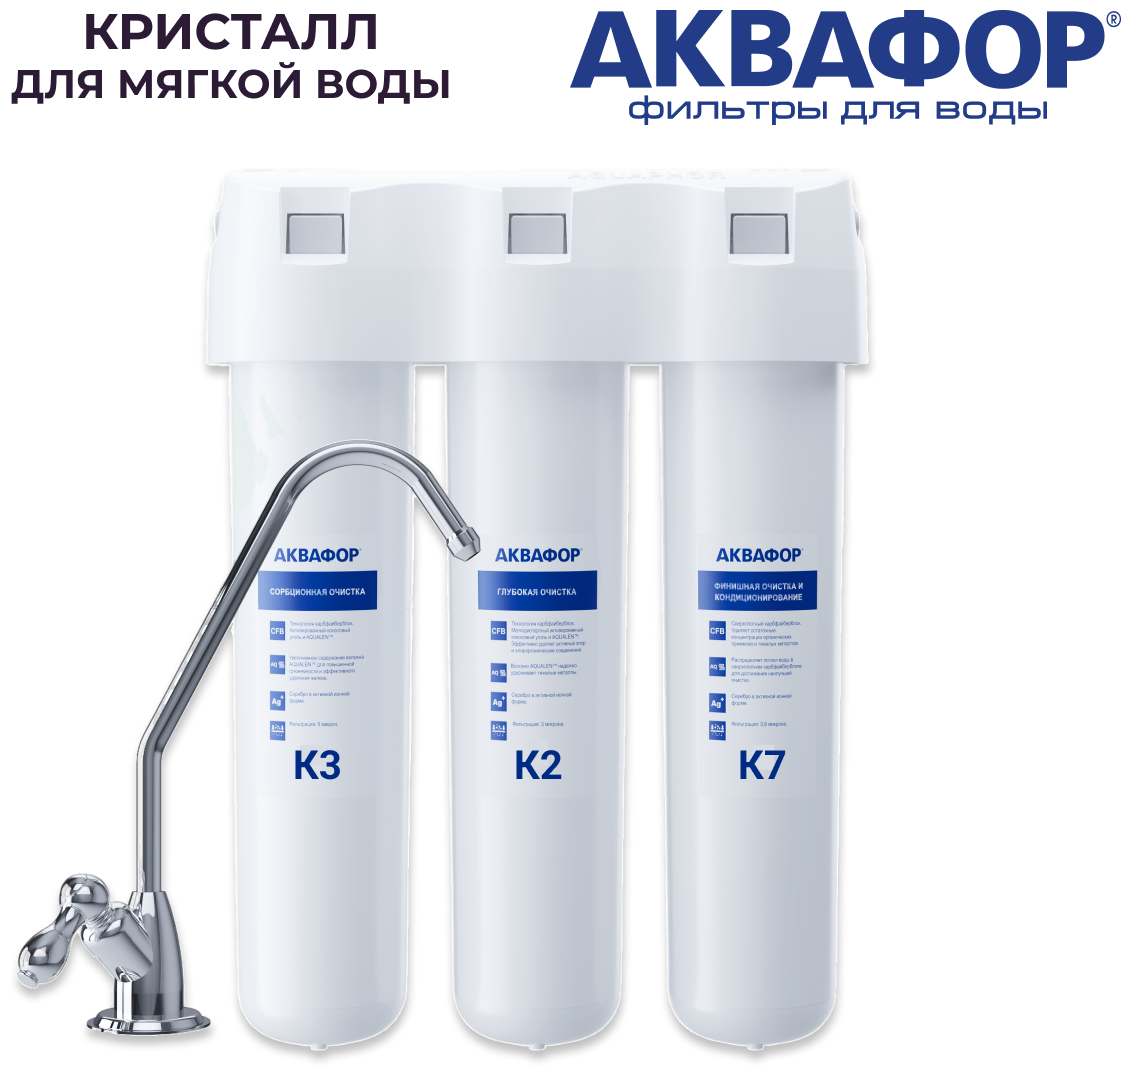 Фильтр для воды Аквафор Кристалл (с модулями К3-К2-К7) для мягкой воды с краном.